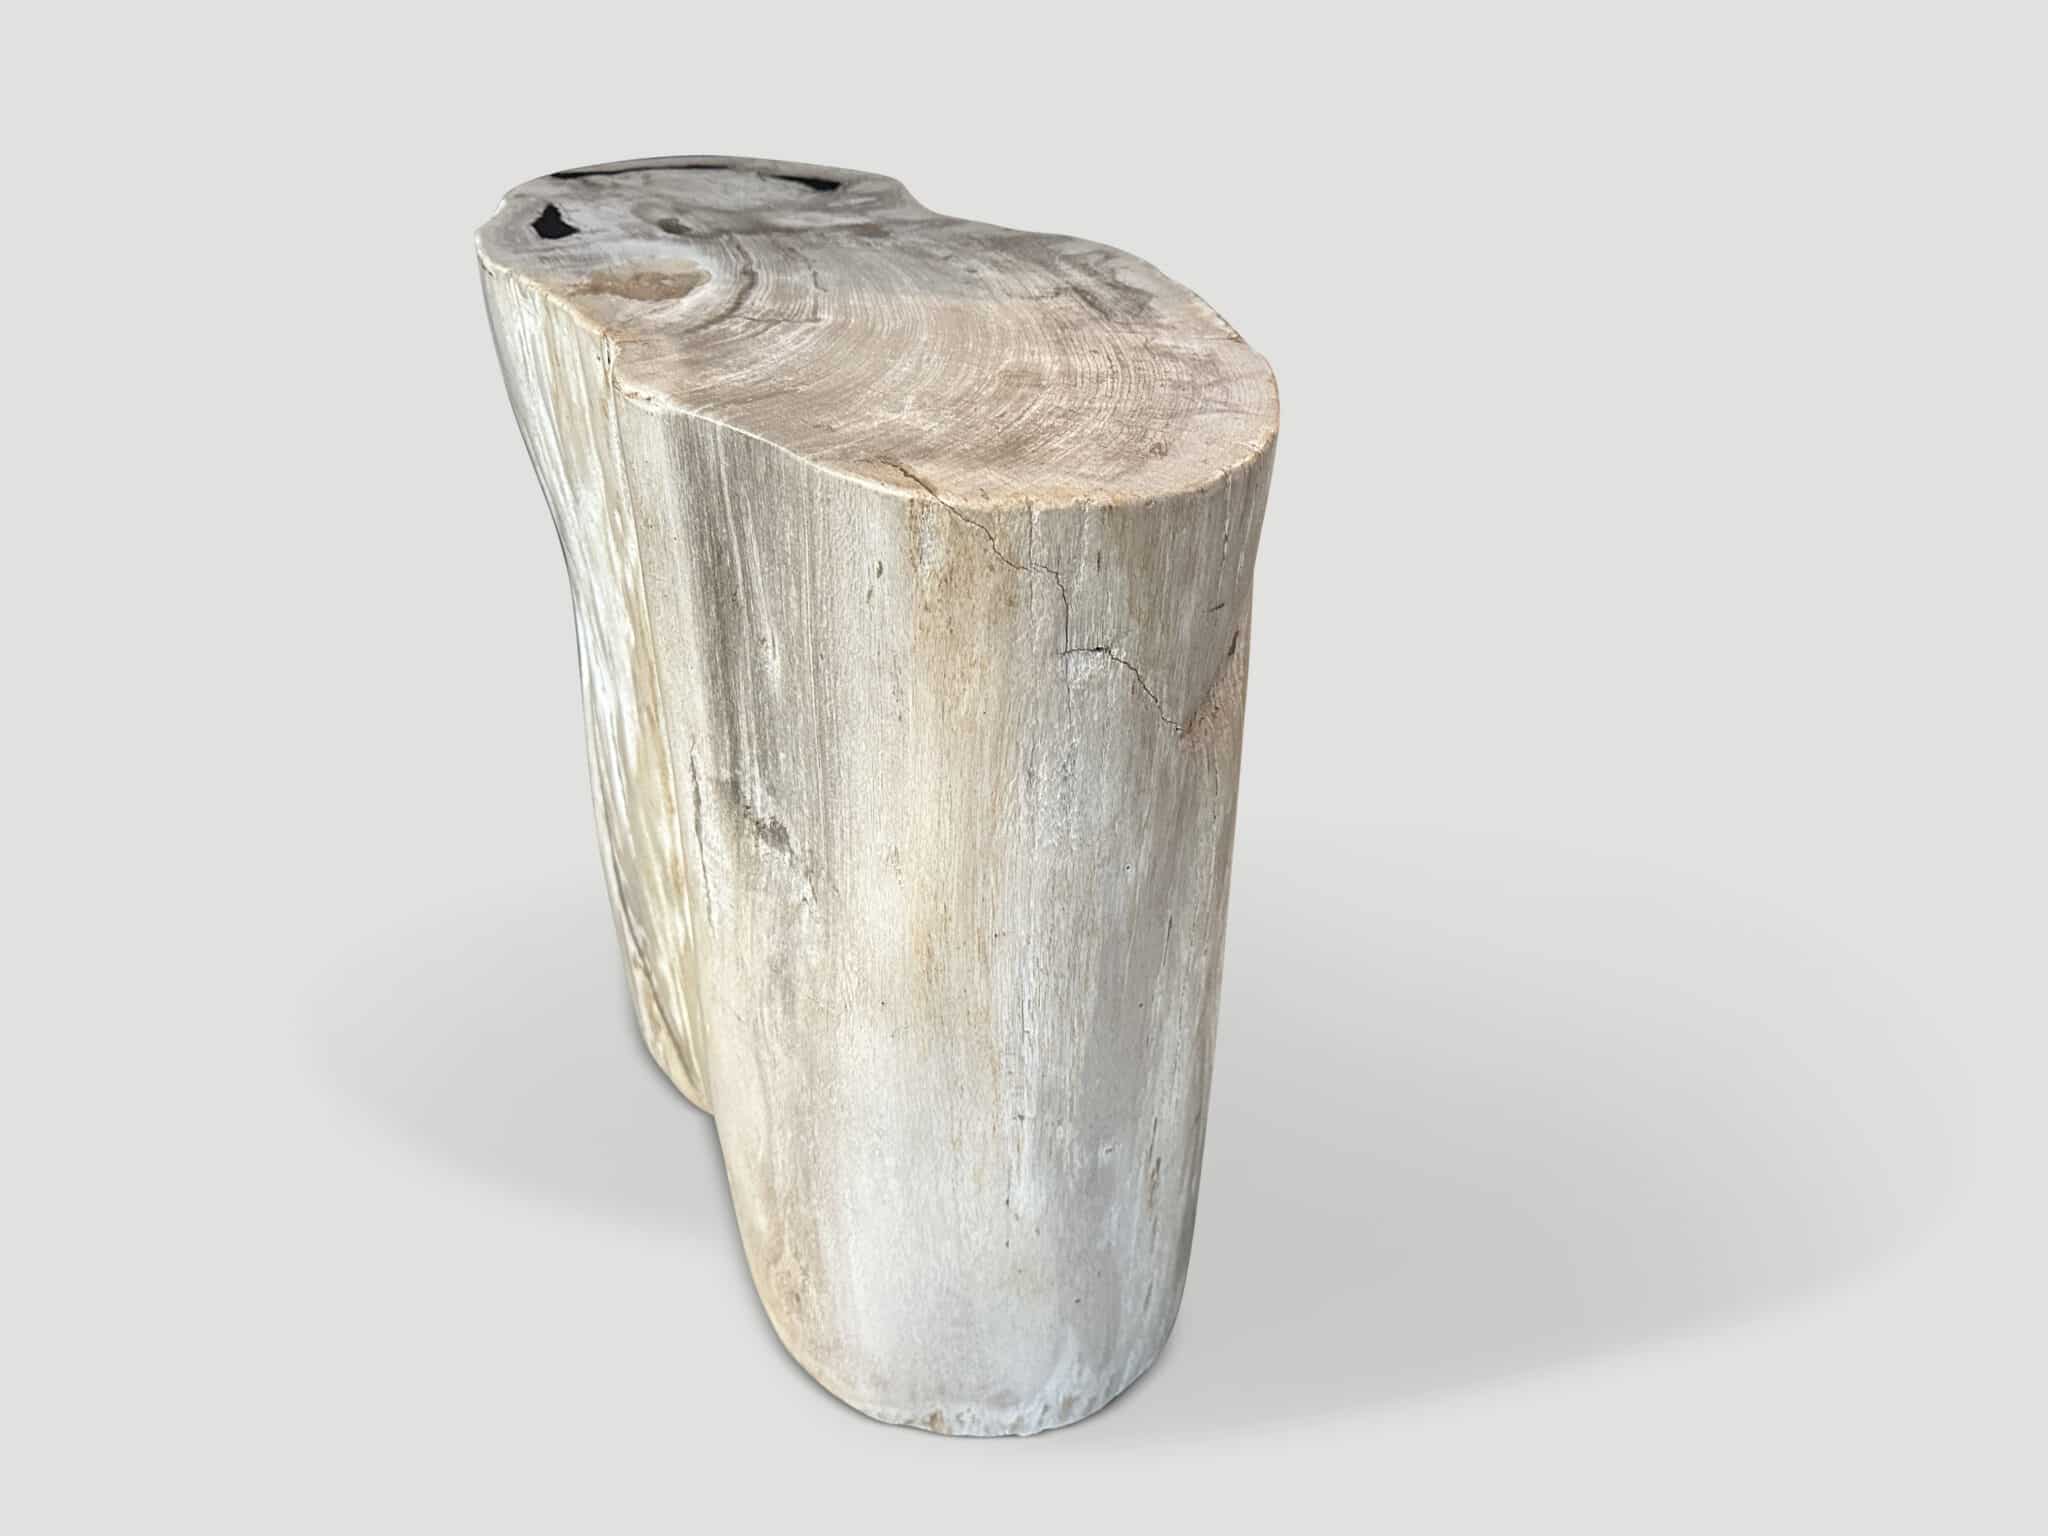 high quality petrified wood side table